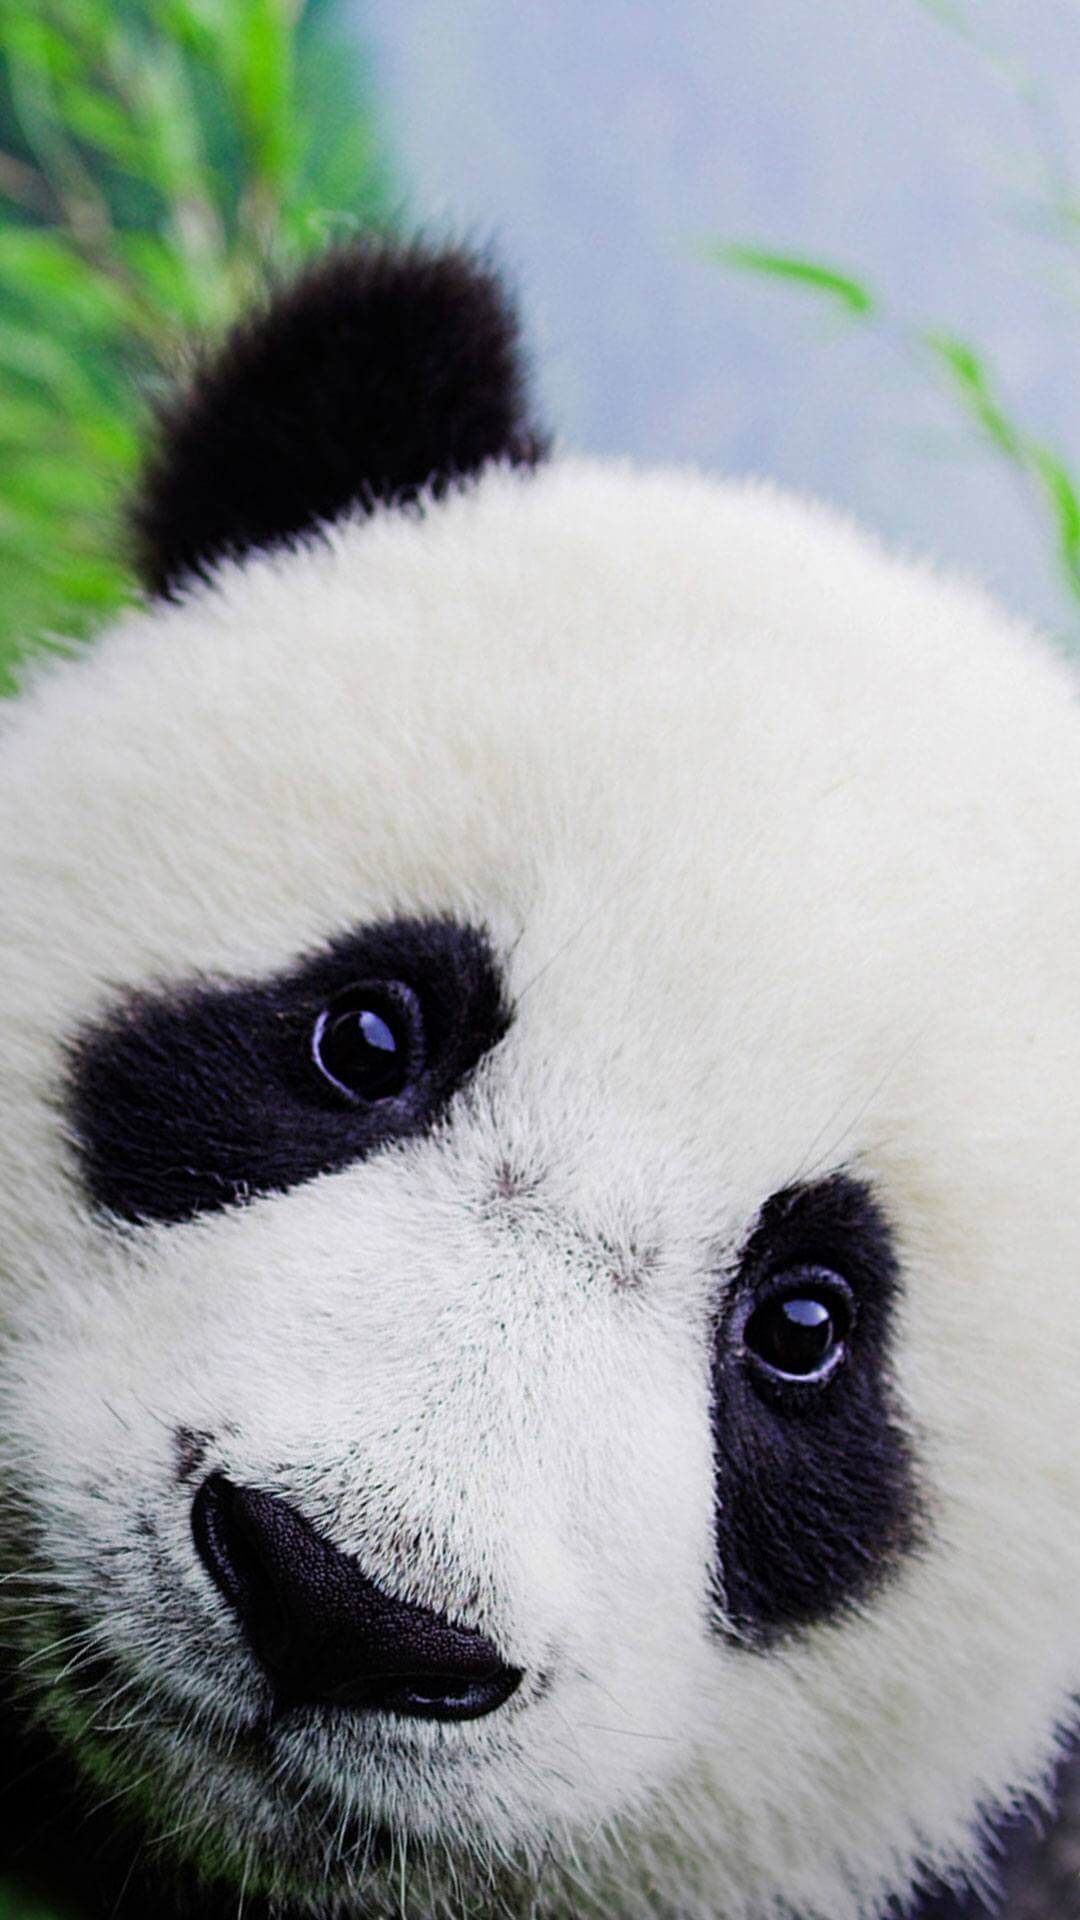 panda baby wallpaper